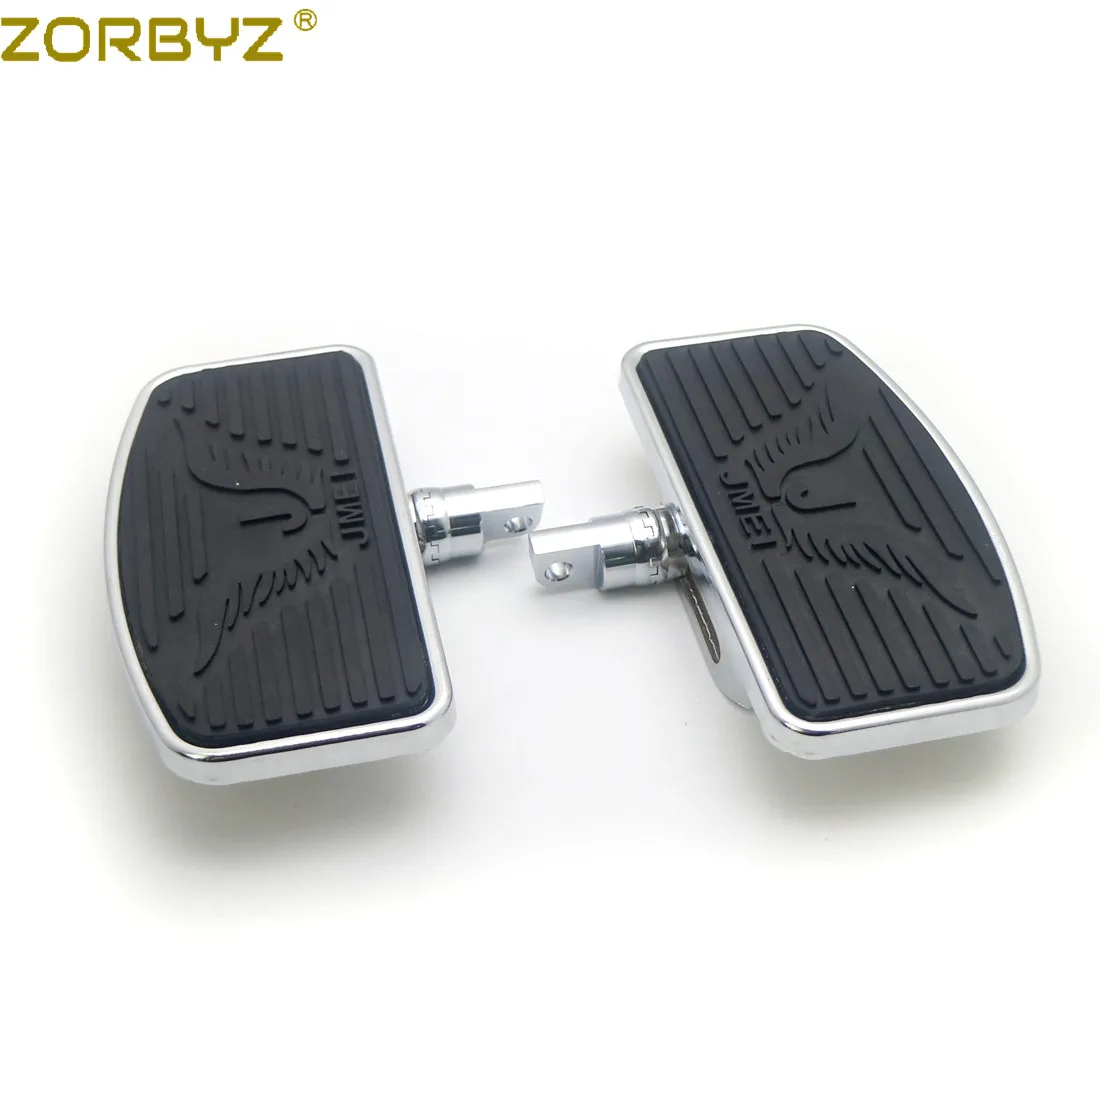 

ZORBYZ Pair Black Adjustable Rear Passenger Floorboard Footboards Footrest For Harley Sportster 883 1200 Dyna